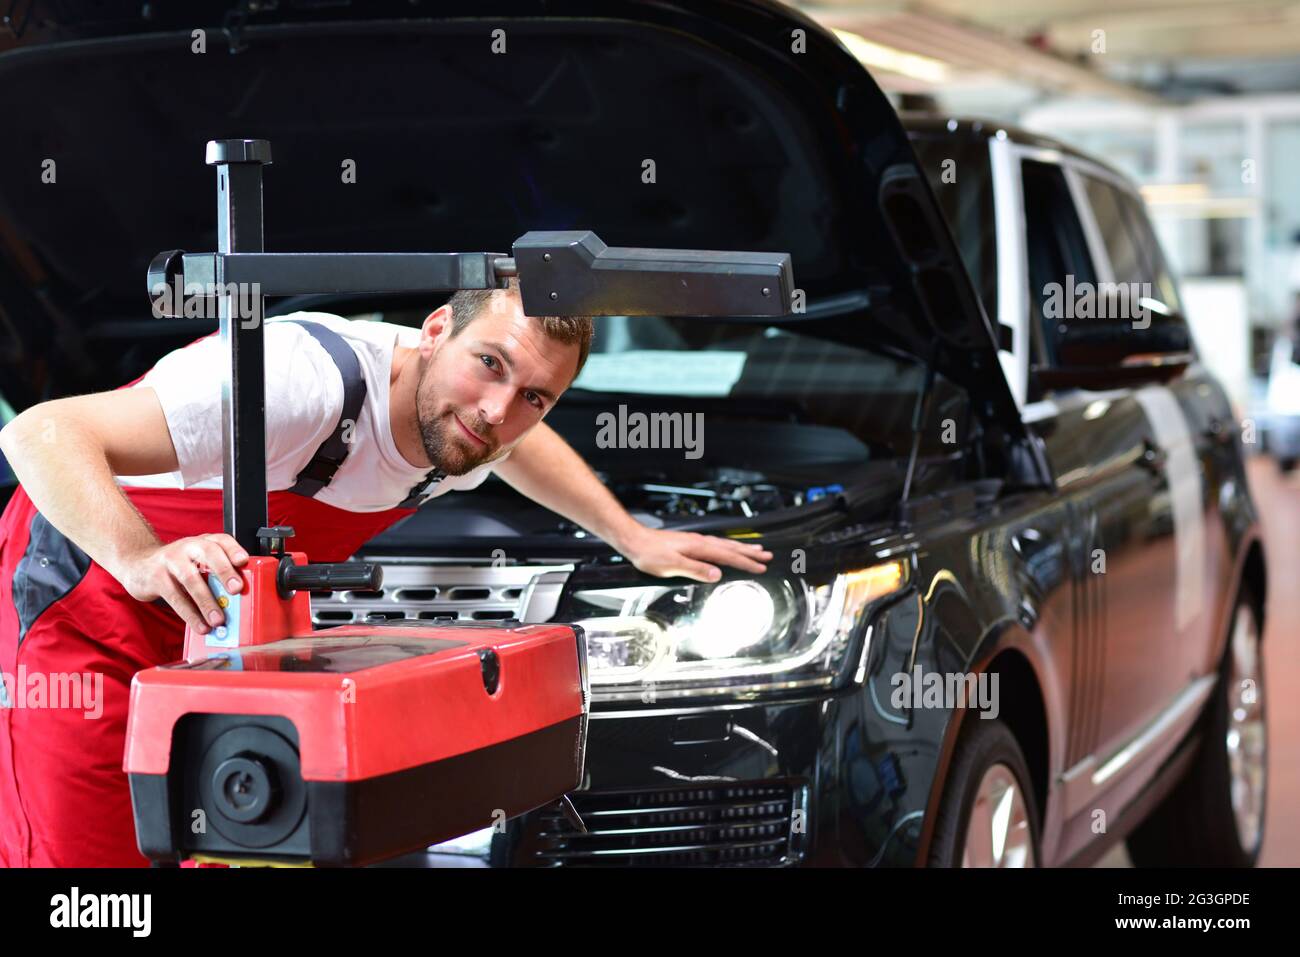 Atelier de réparation automobile - travailleur vérifie et ajuste les phares d'un système d'éclairage de voiture Banque D'Images